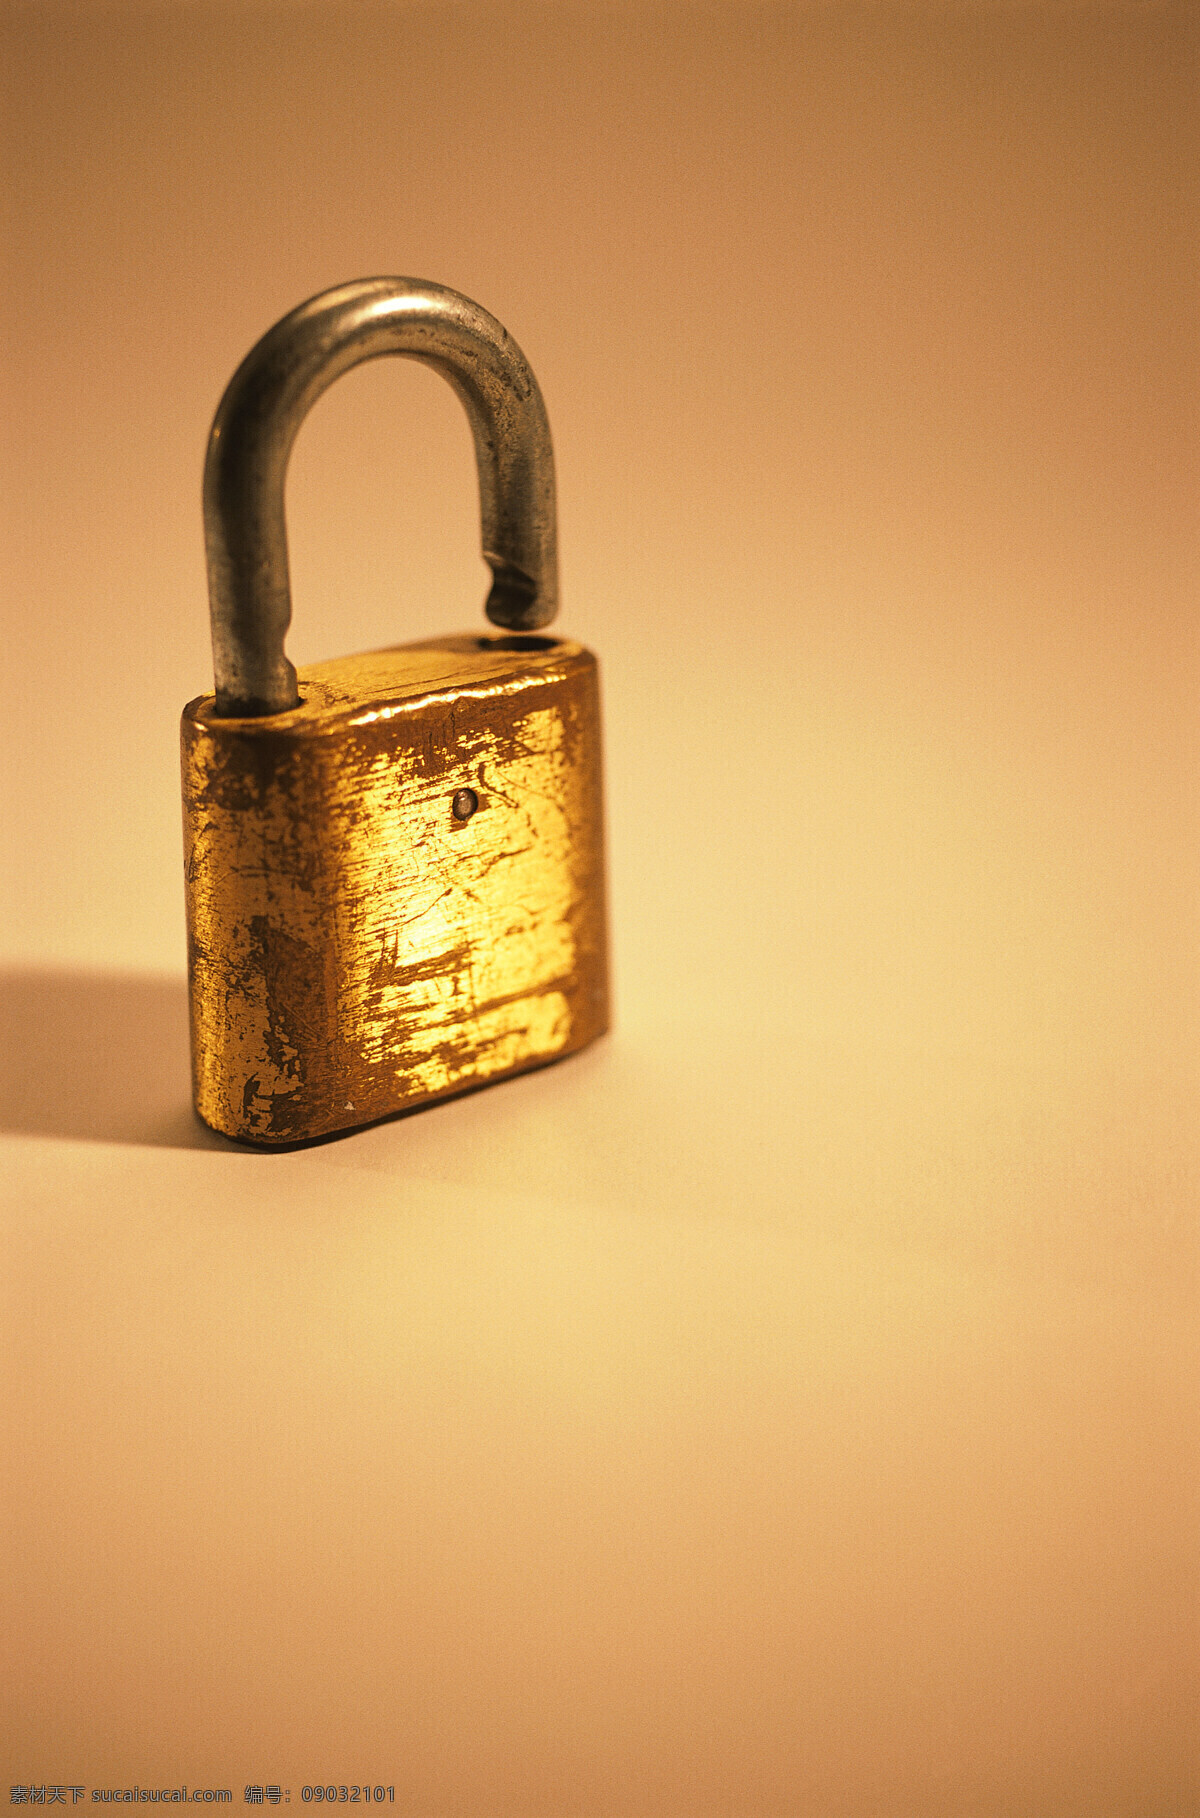 锁具 锁头 铜锁 老锁 生活 复古 生活百科 生活素材